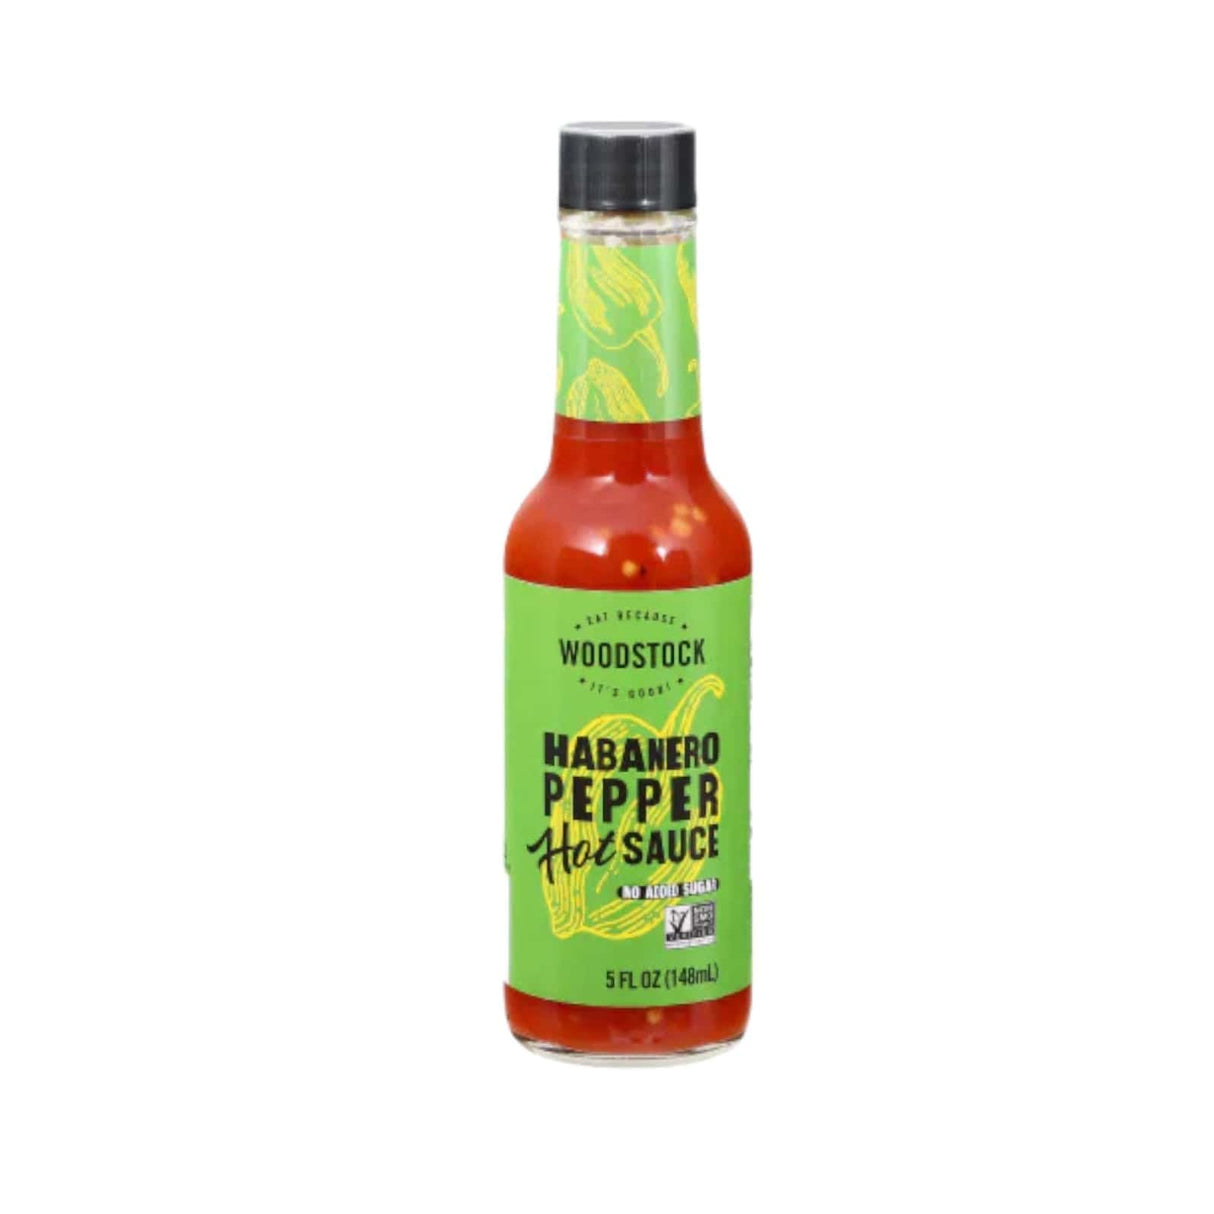 Woodstock Habanero Pepper Hot Sauce